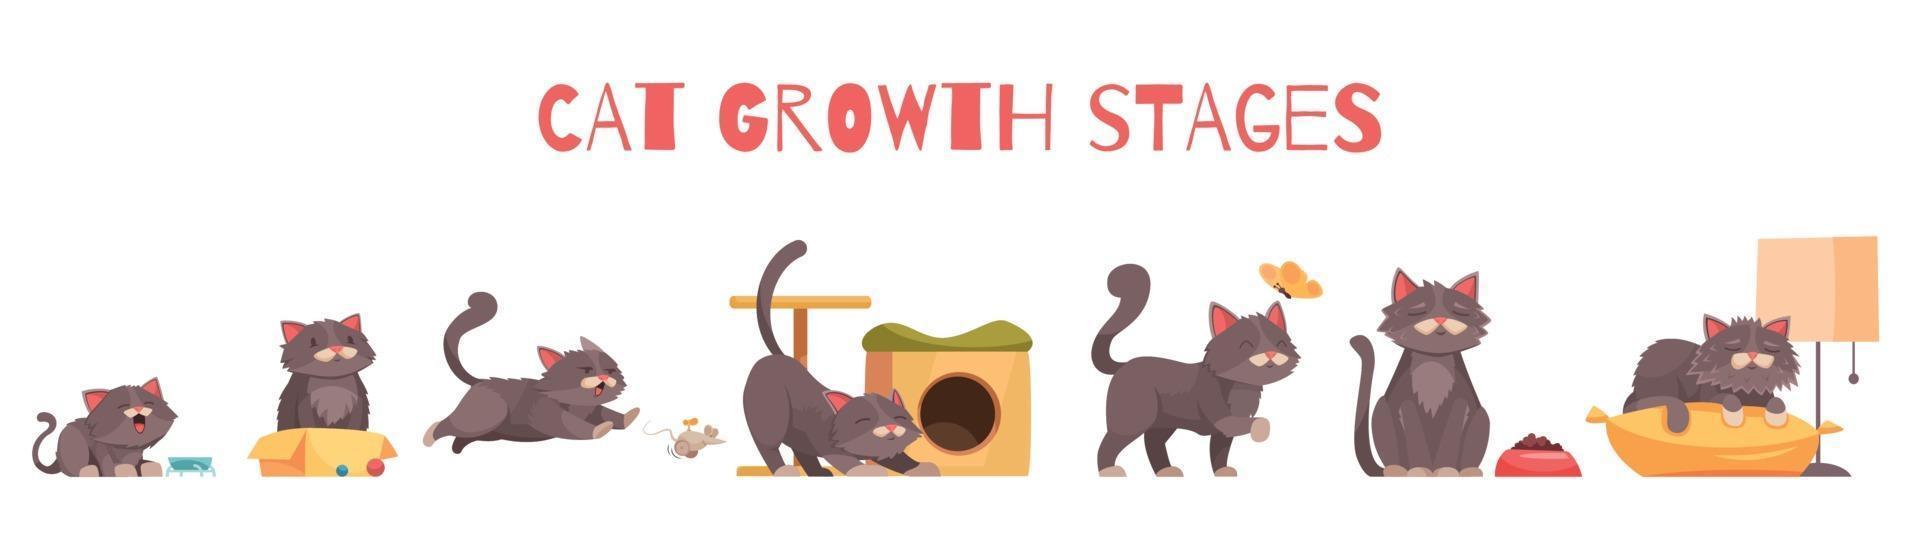 composición de las etapas de crecimiento del gato vector